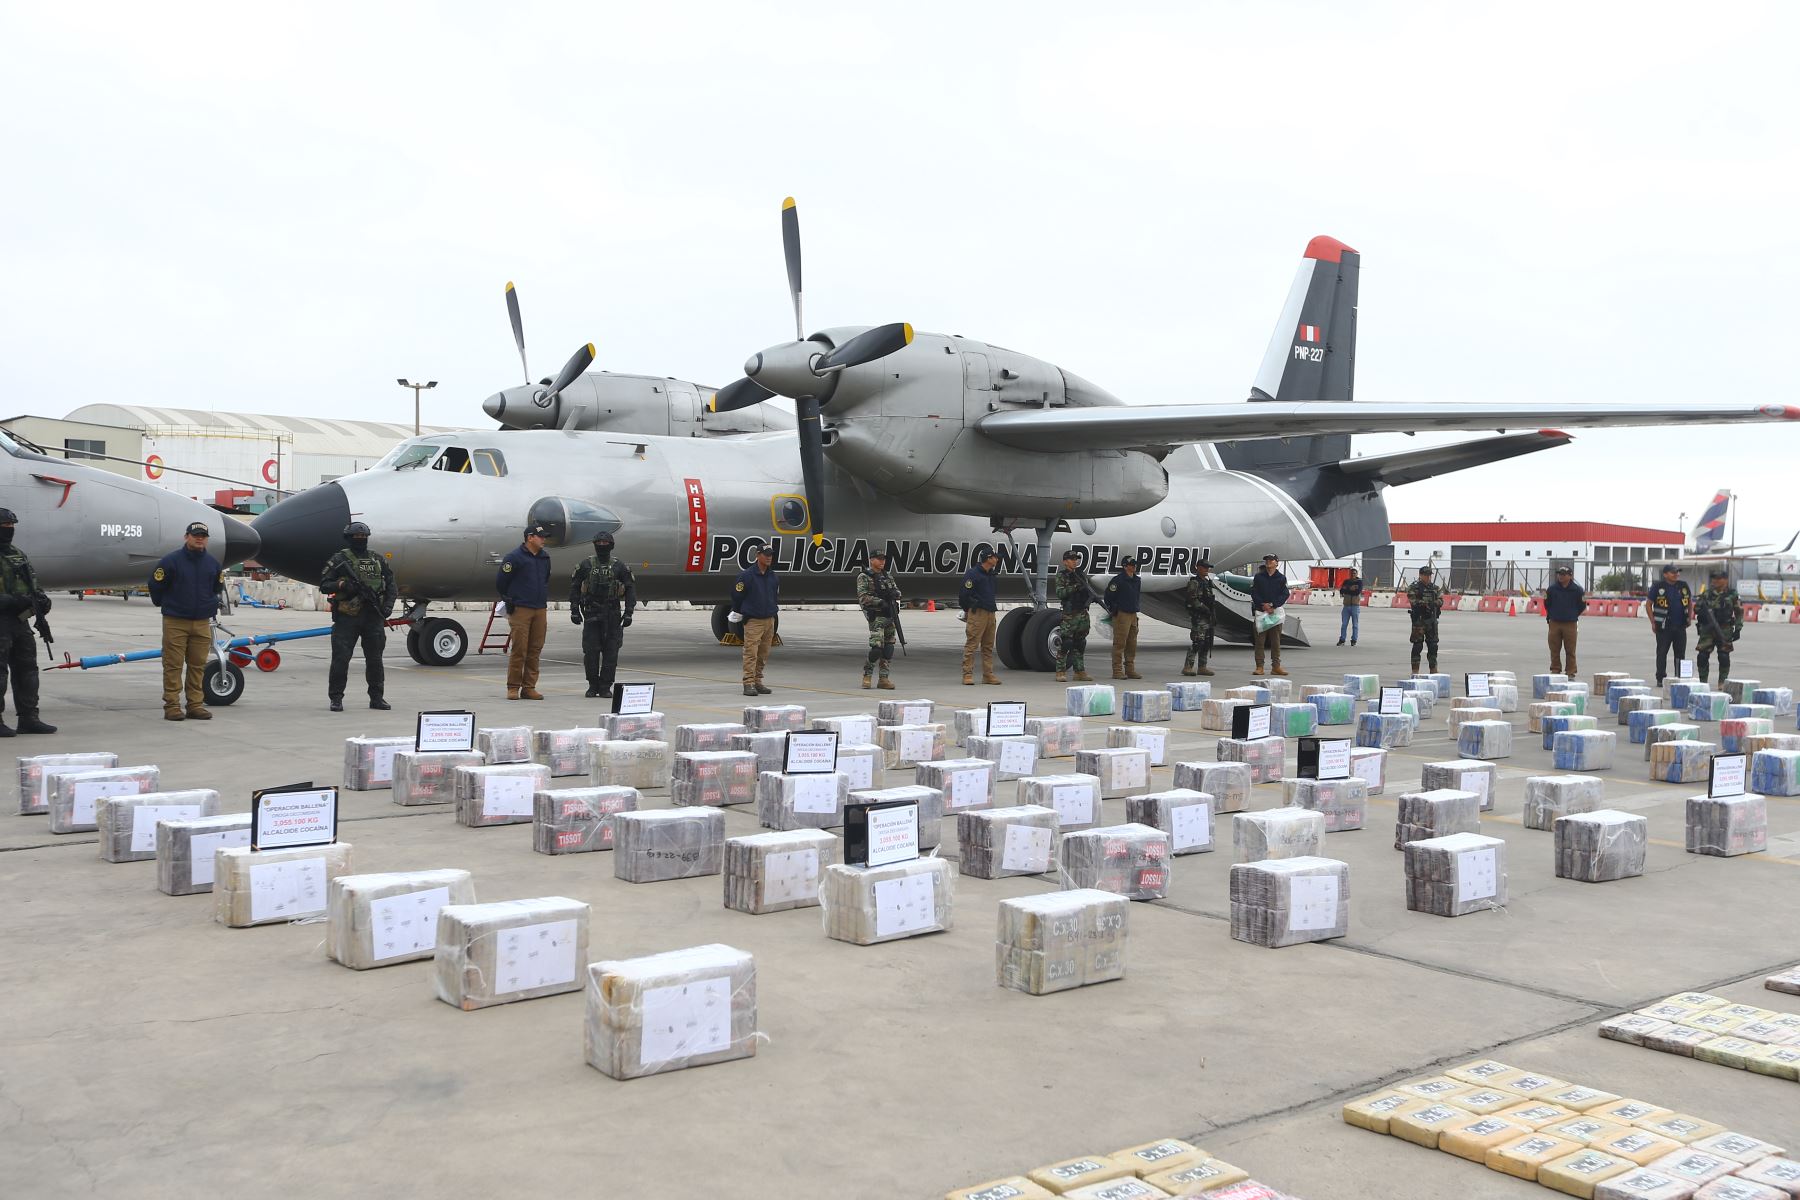 Autoridades peruanas presentaron esta tarde los paquetes conteniendo la droga decomisada en operación conjunta entre la Policía Nacional y la Marina de Guerra del Perú. Foto: ANDINA/Eddy Ramos